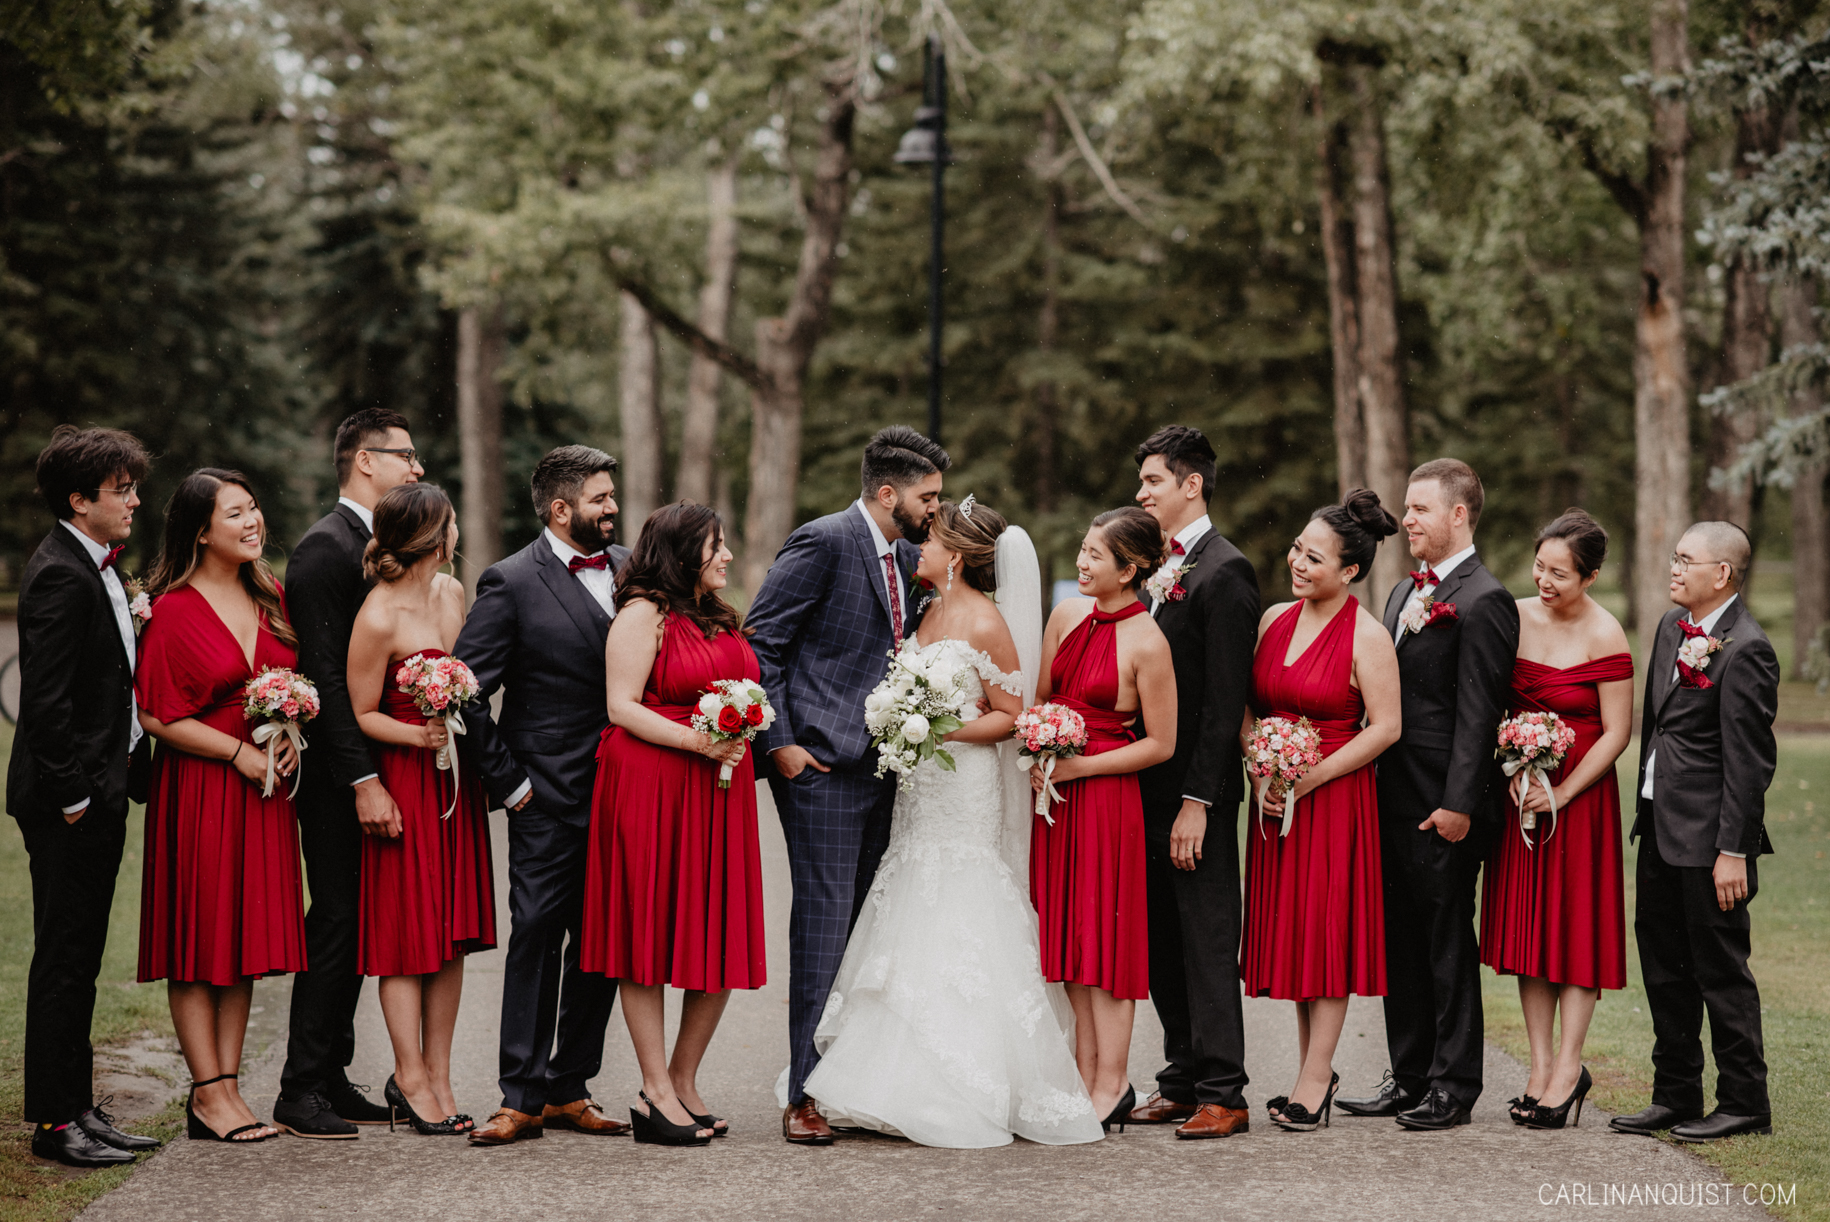 Bridal Party - Catholic/Sikh Wedding Photographer Calgary